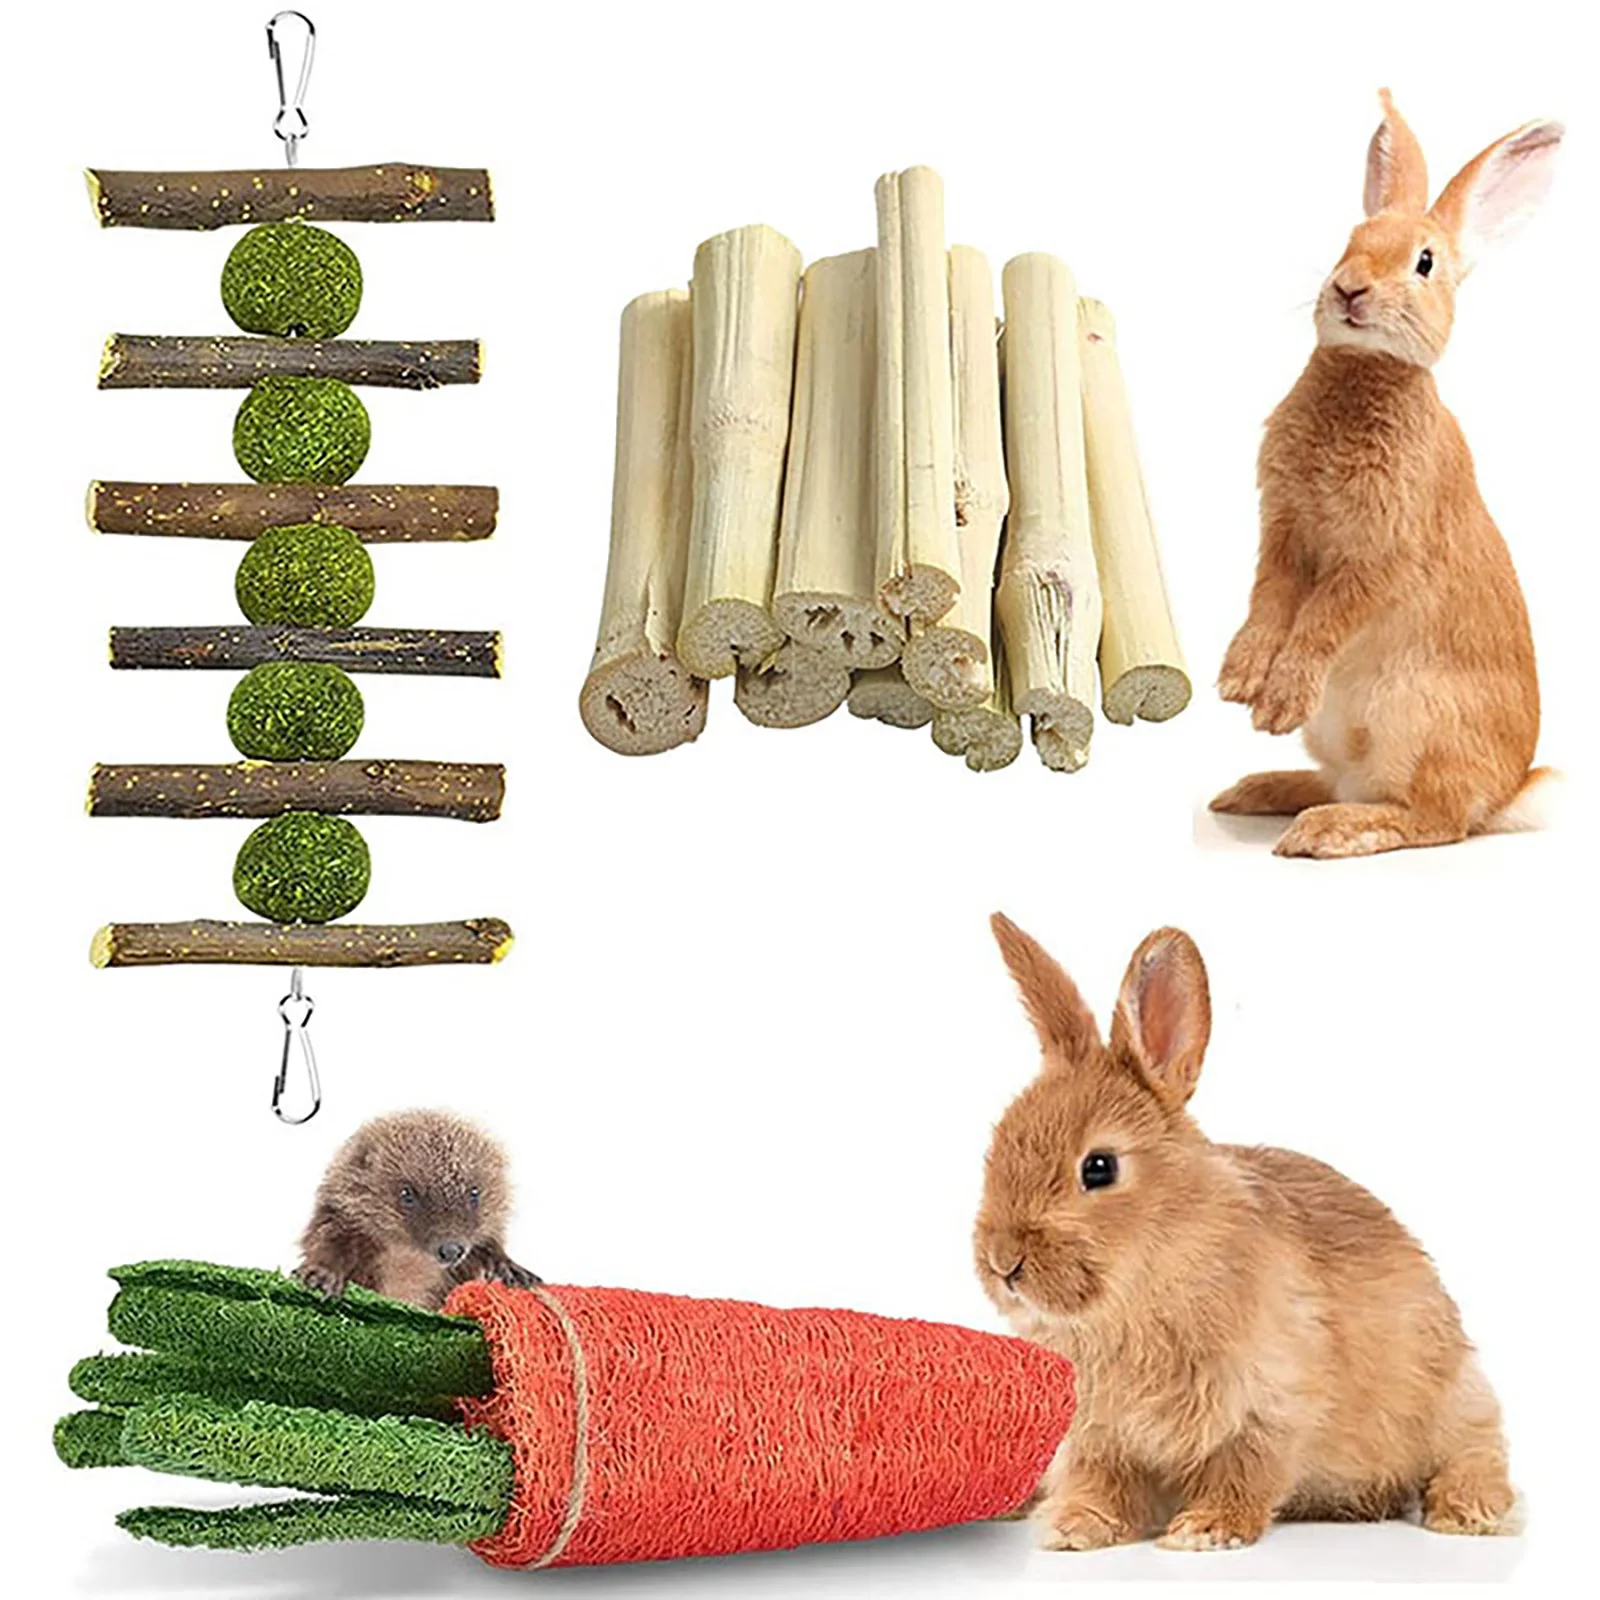 

6 шт./компл., жевательные игрушки для кроликов, маленькие игрушки для жевания животных, зубы из натурального материала, палочки для кроликов, ...